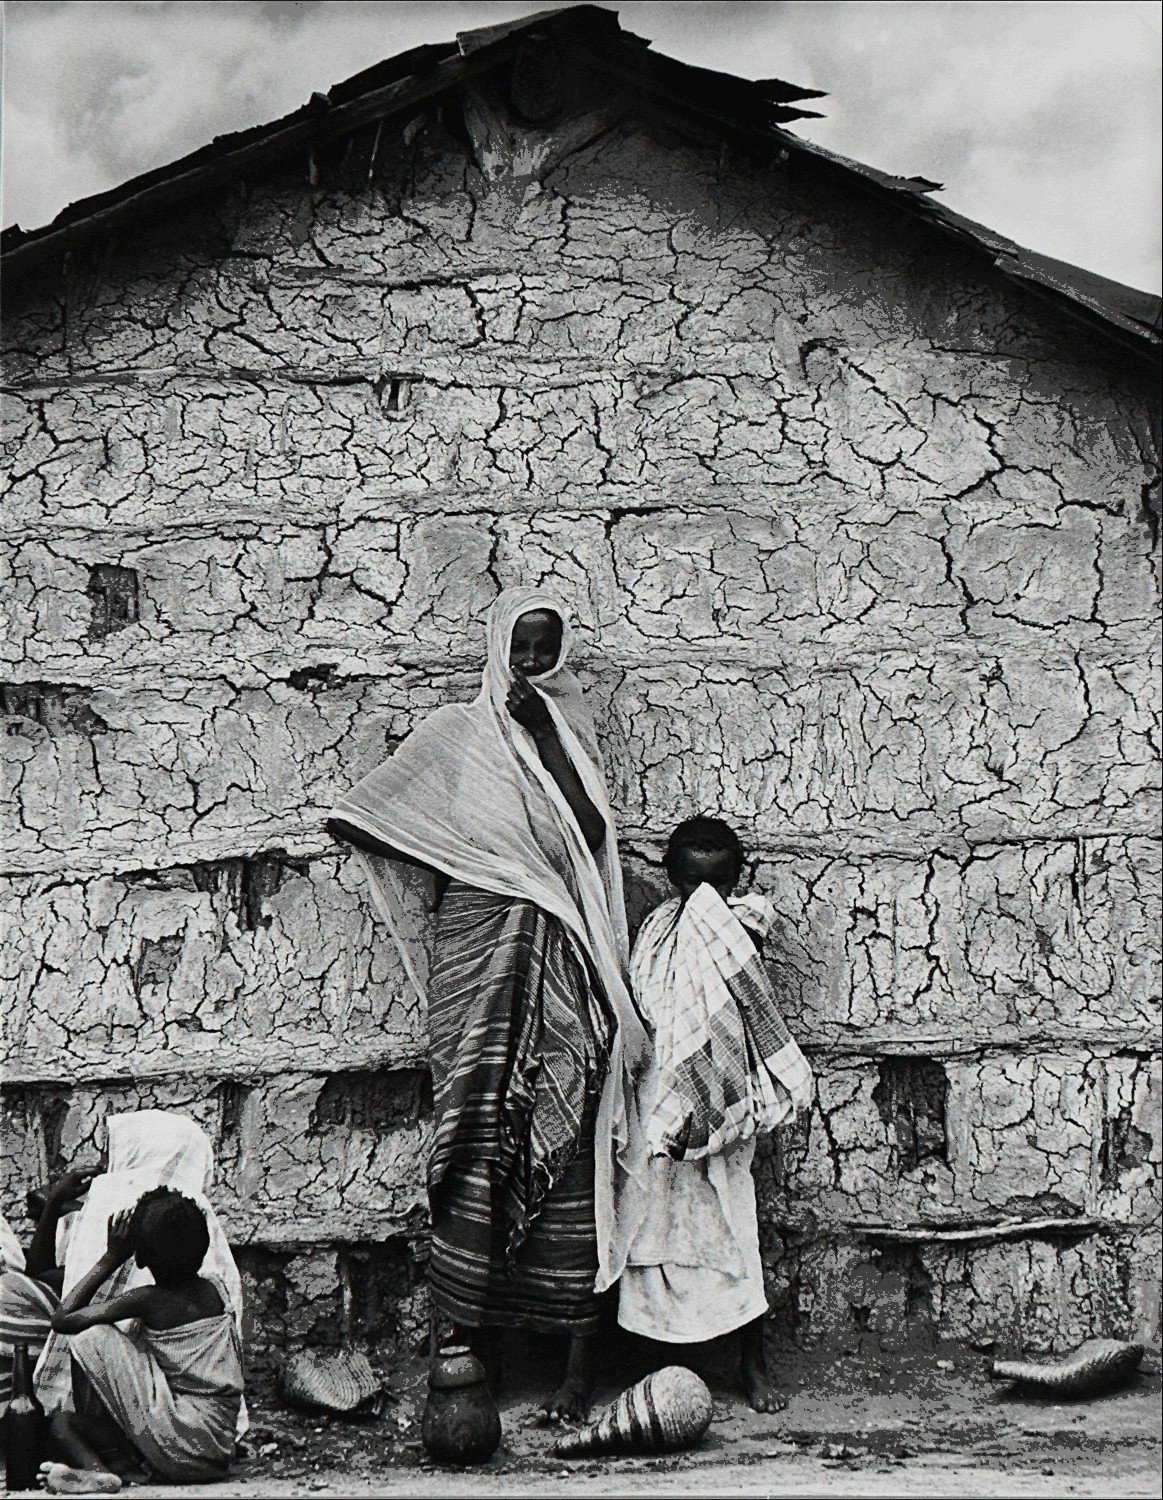 Африканская деревня, 1970. Фотограф Марио Де Бьязи